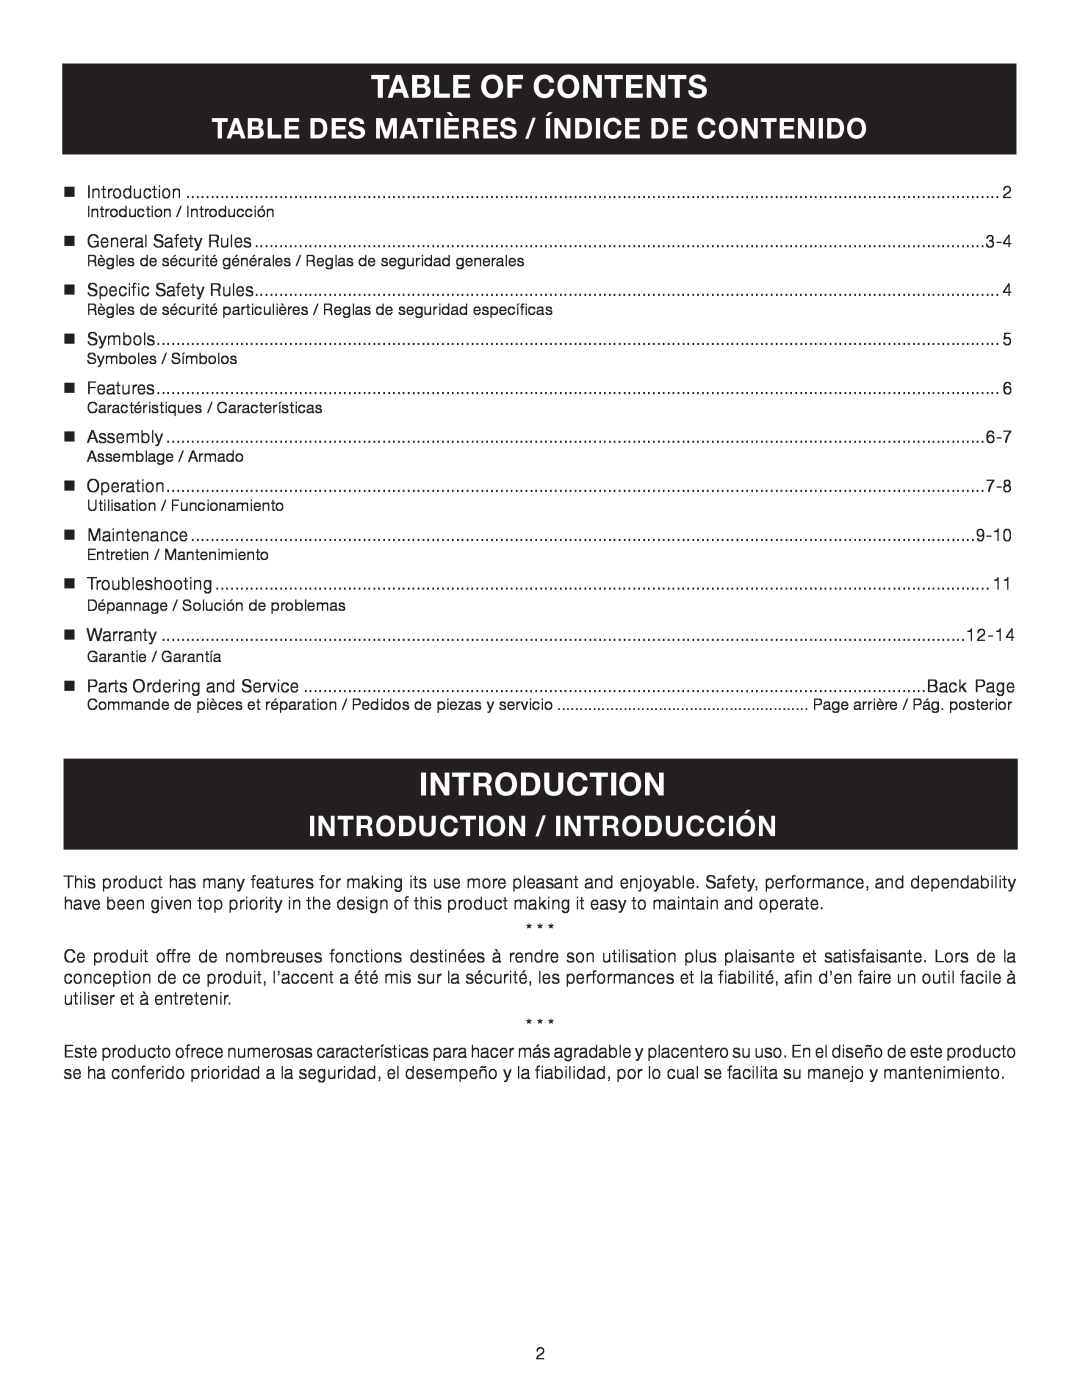 Ryobi RY34000 Table Of Contents, Table Des Matières / Índice De Contenido, Introduction / Introducción 